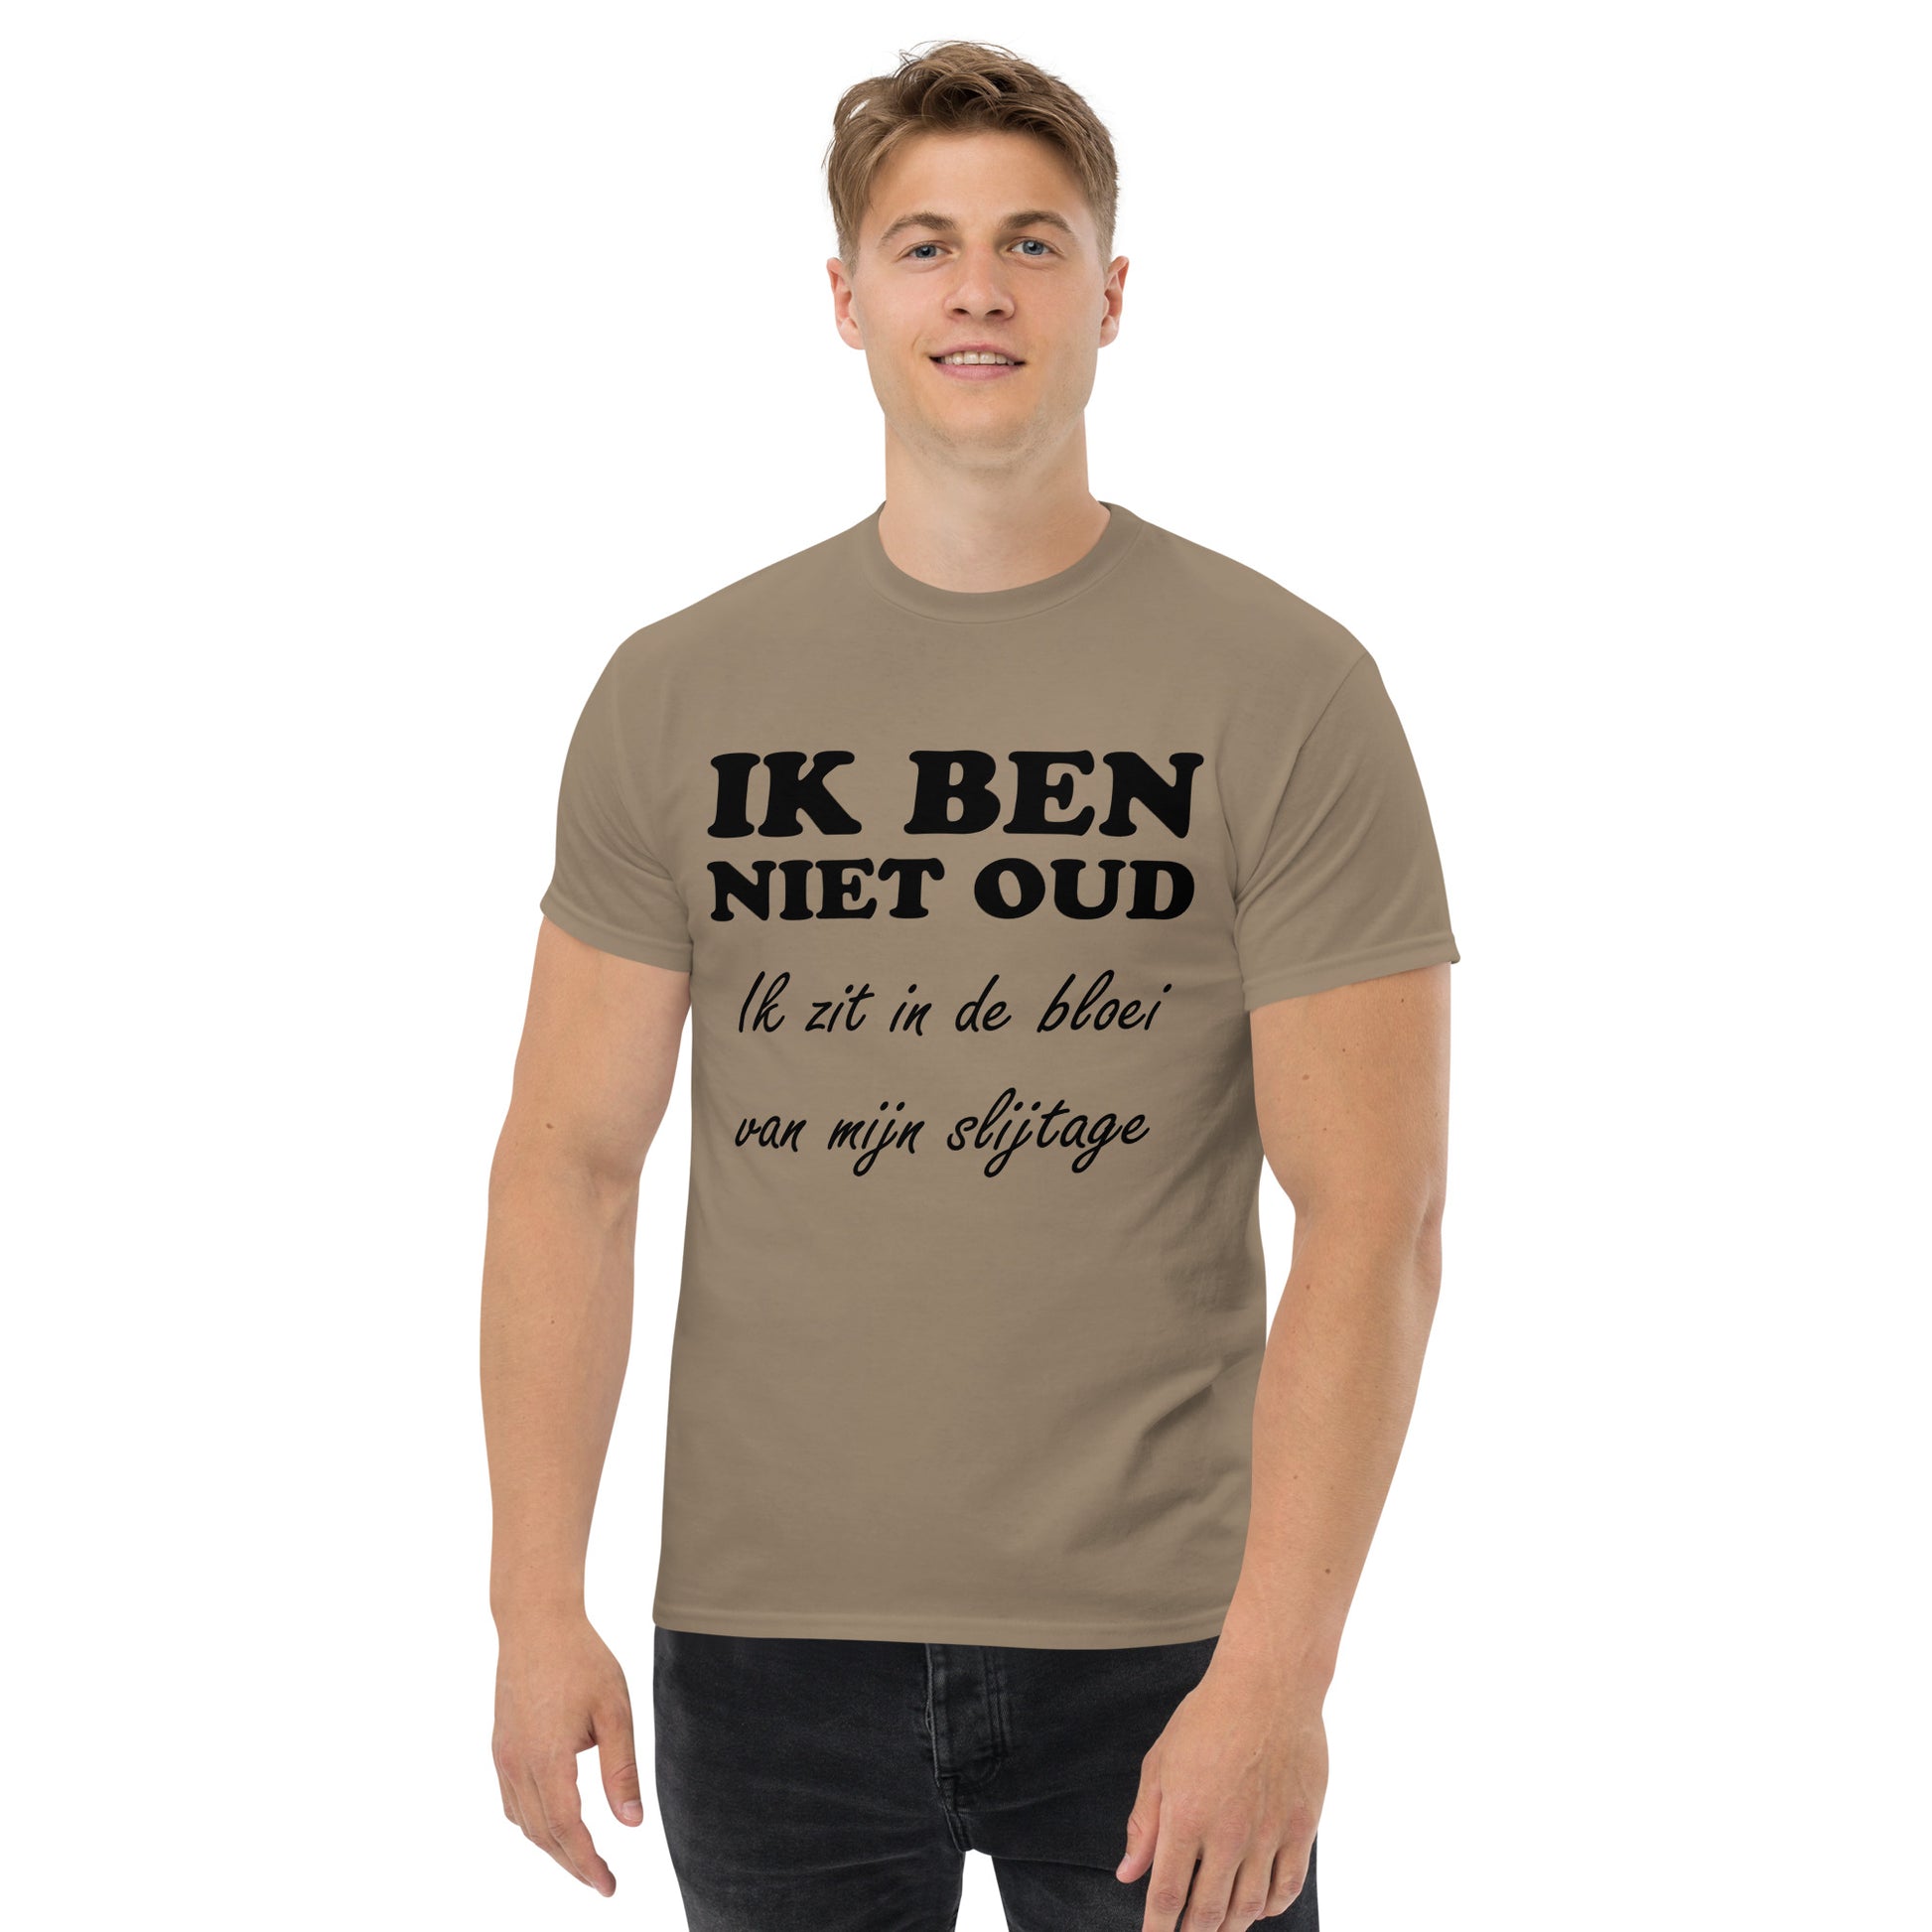 Brown T-shirt with the text "IK BEN NIET OUD ik zit in de bloei van mijn slijtage"